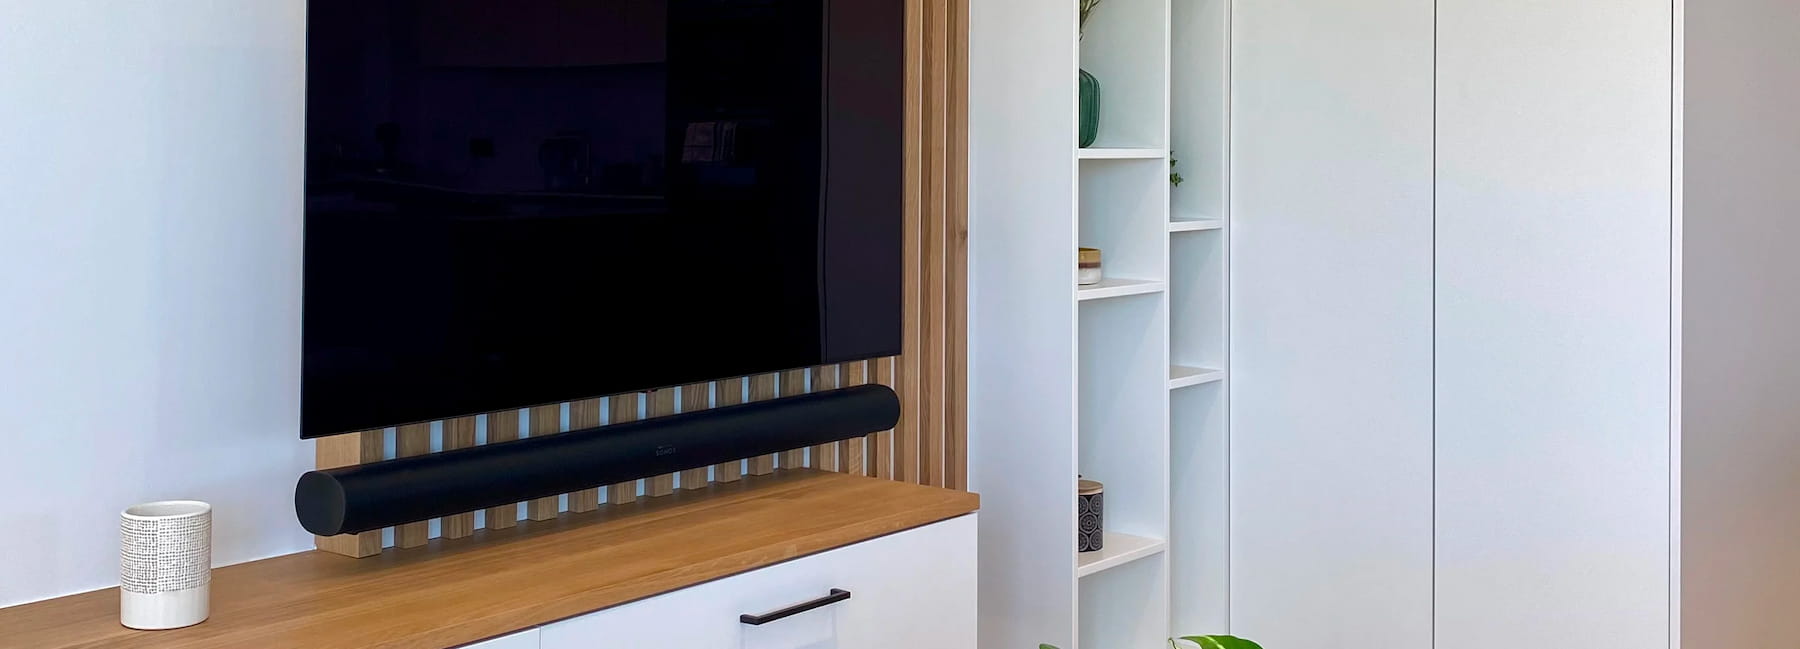 Meuble TV sur mesure blanc avec claustra bois